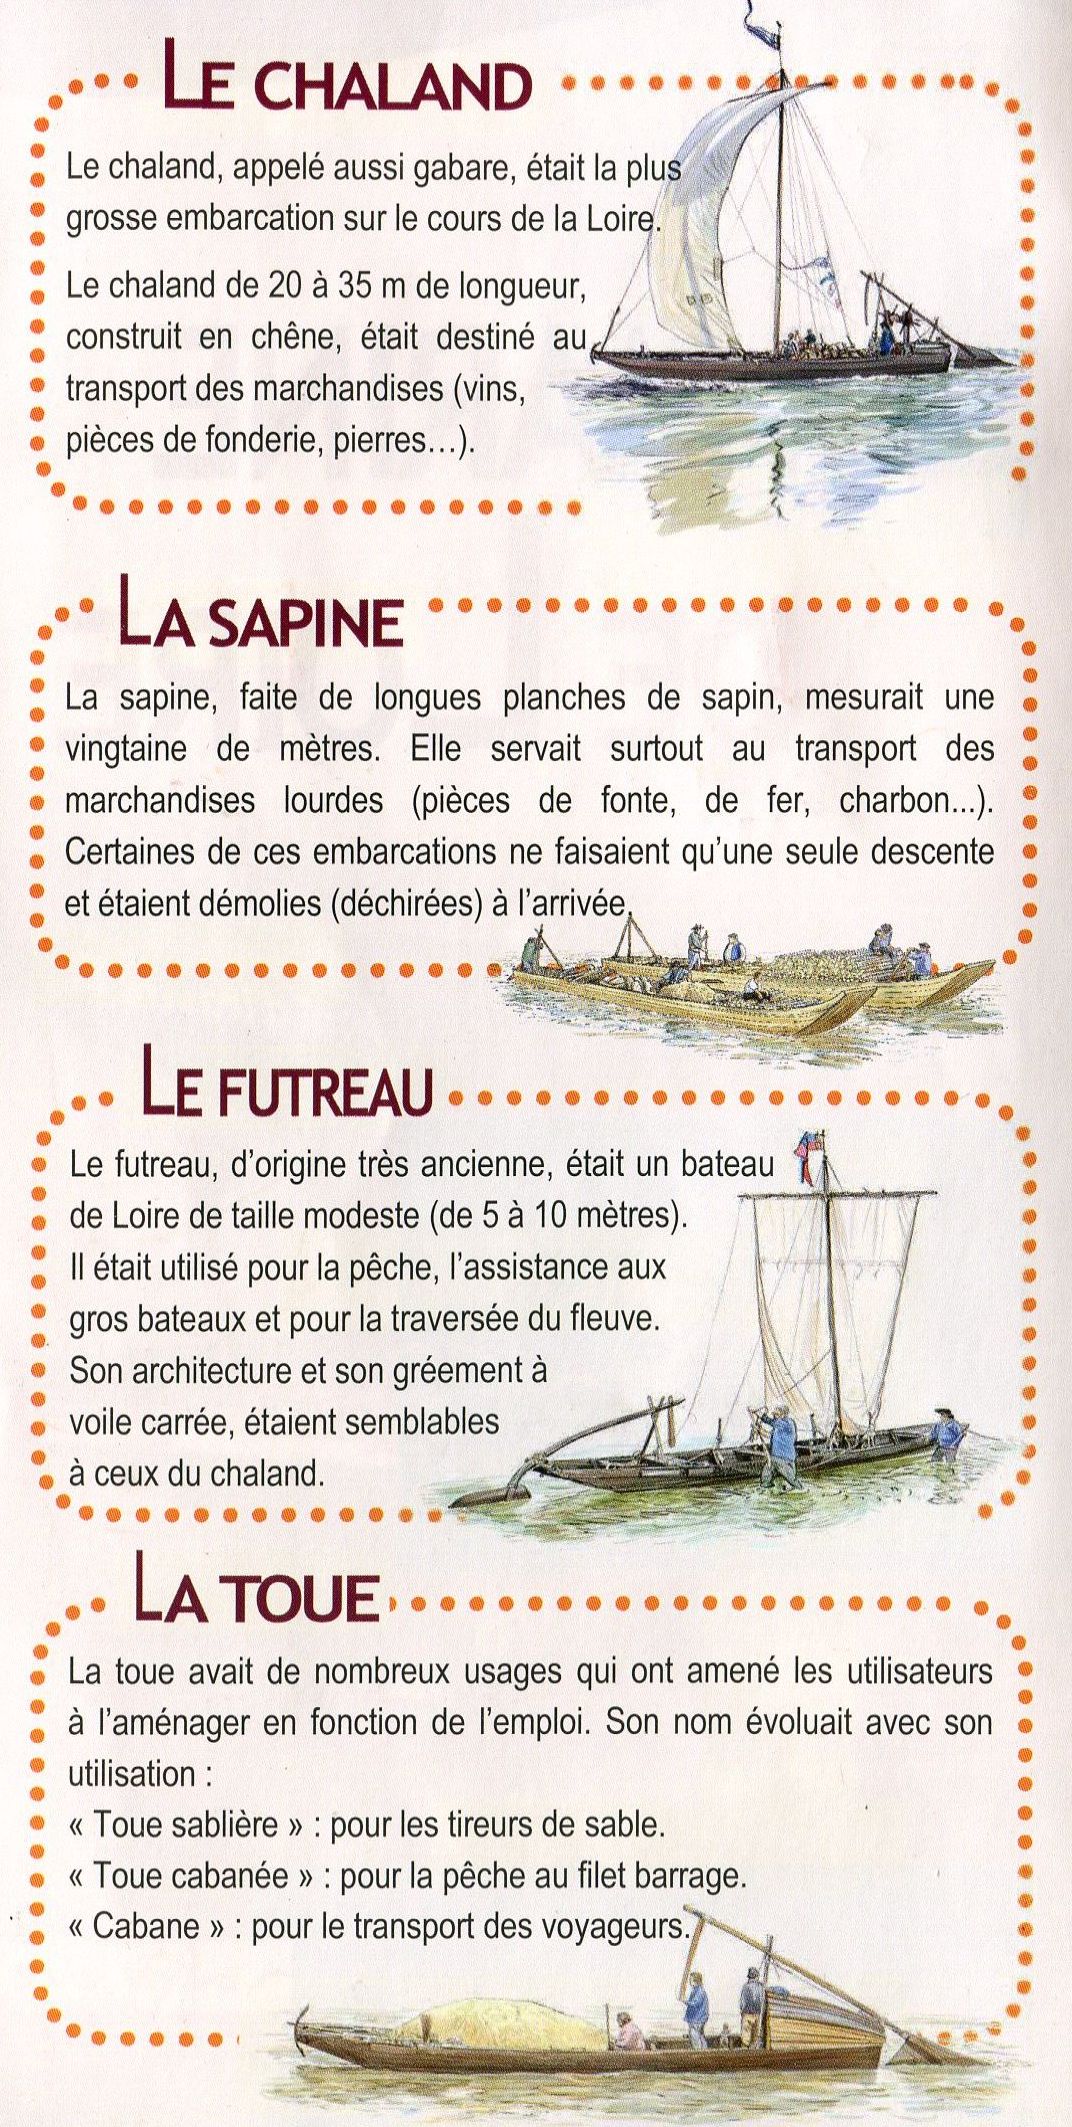 Bateaux de Loire